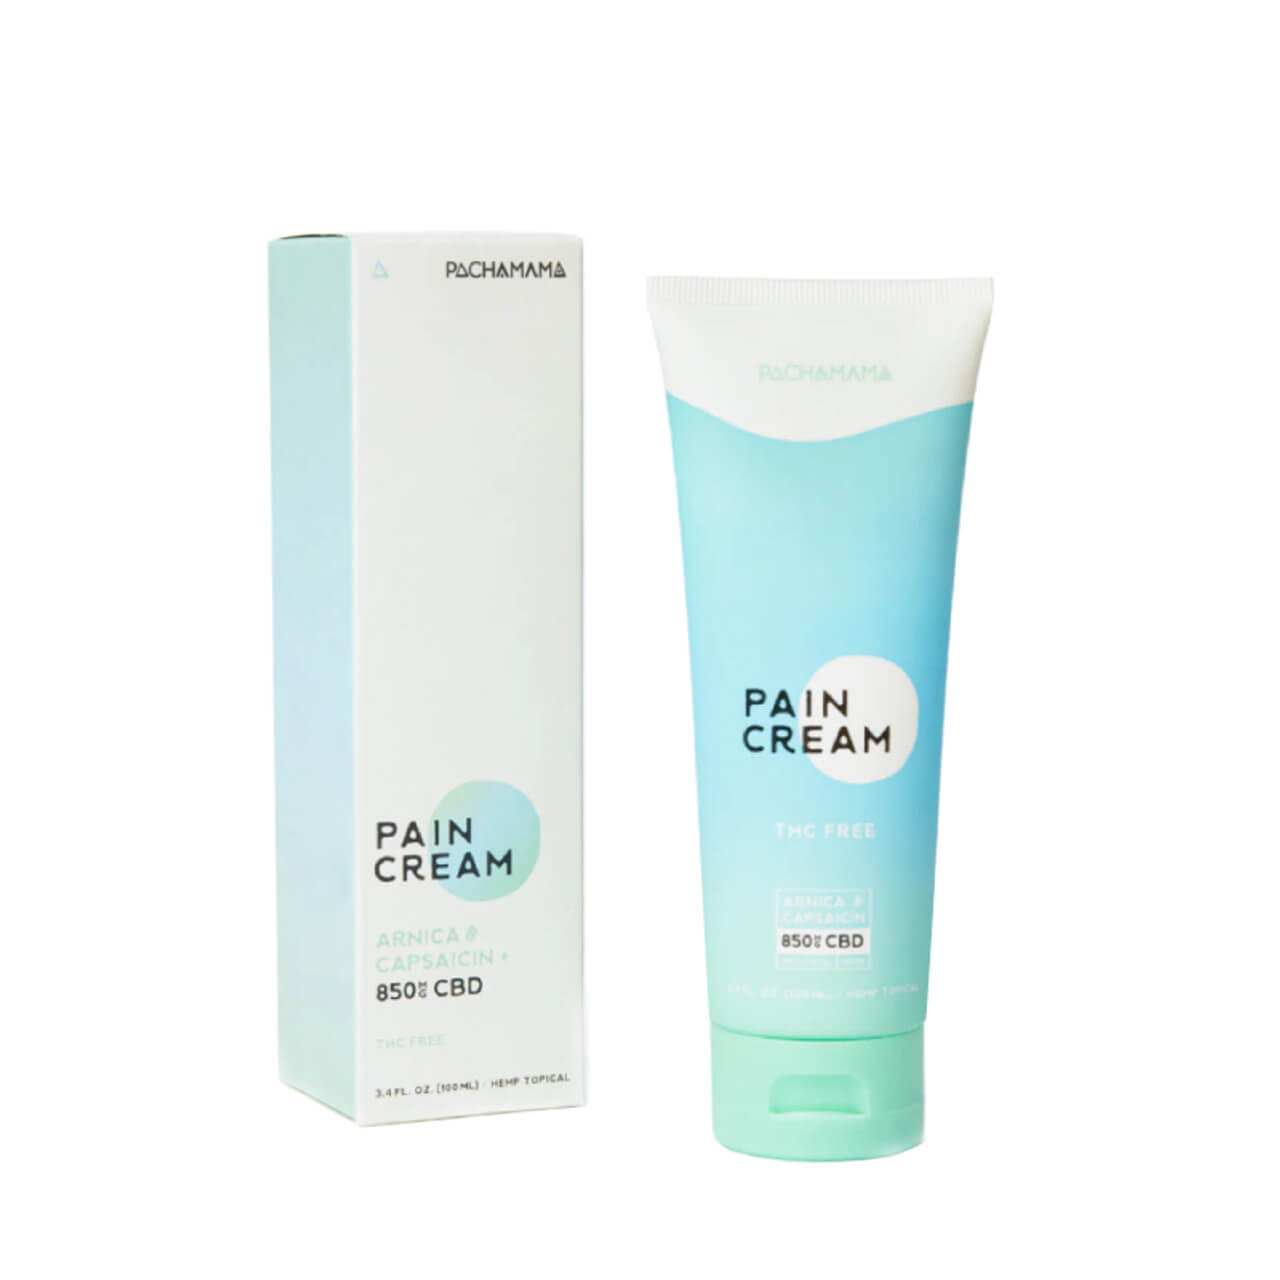 Pachamama Pain Cream 850mg